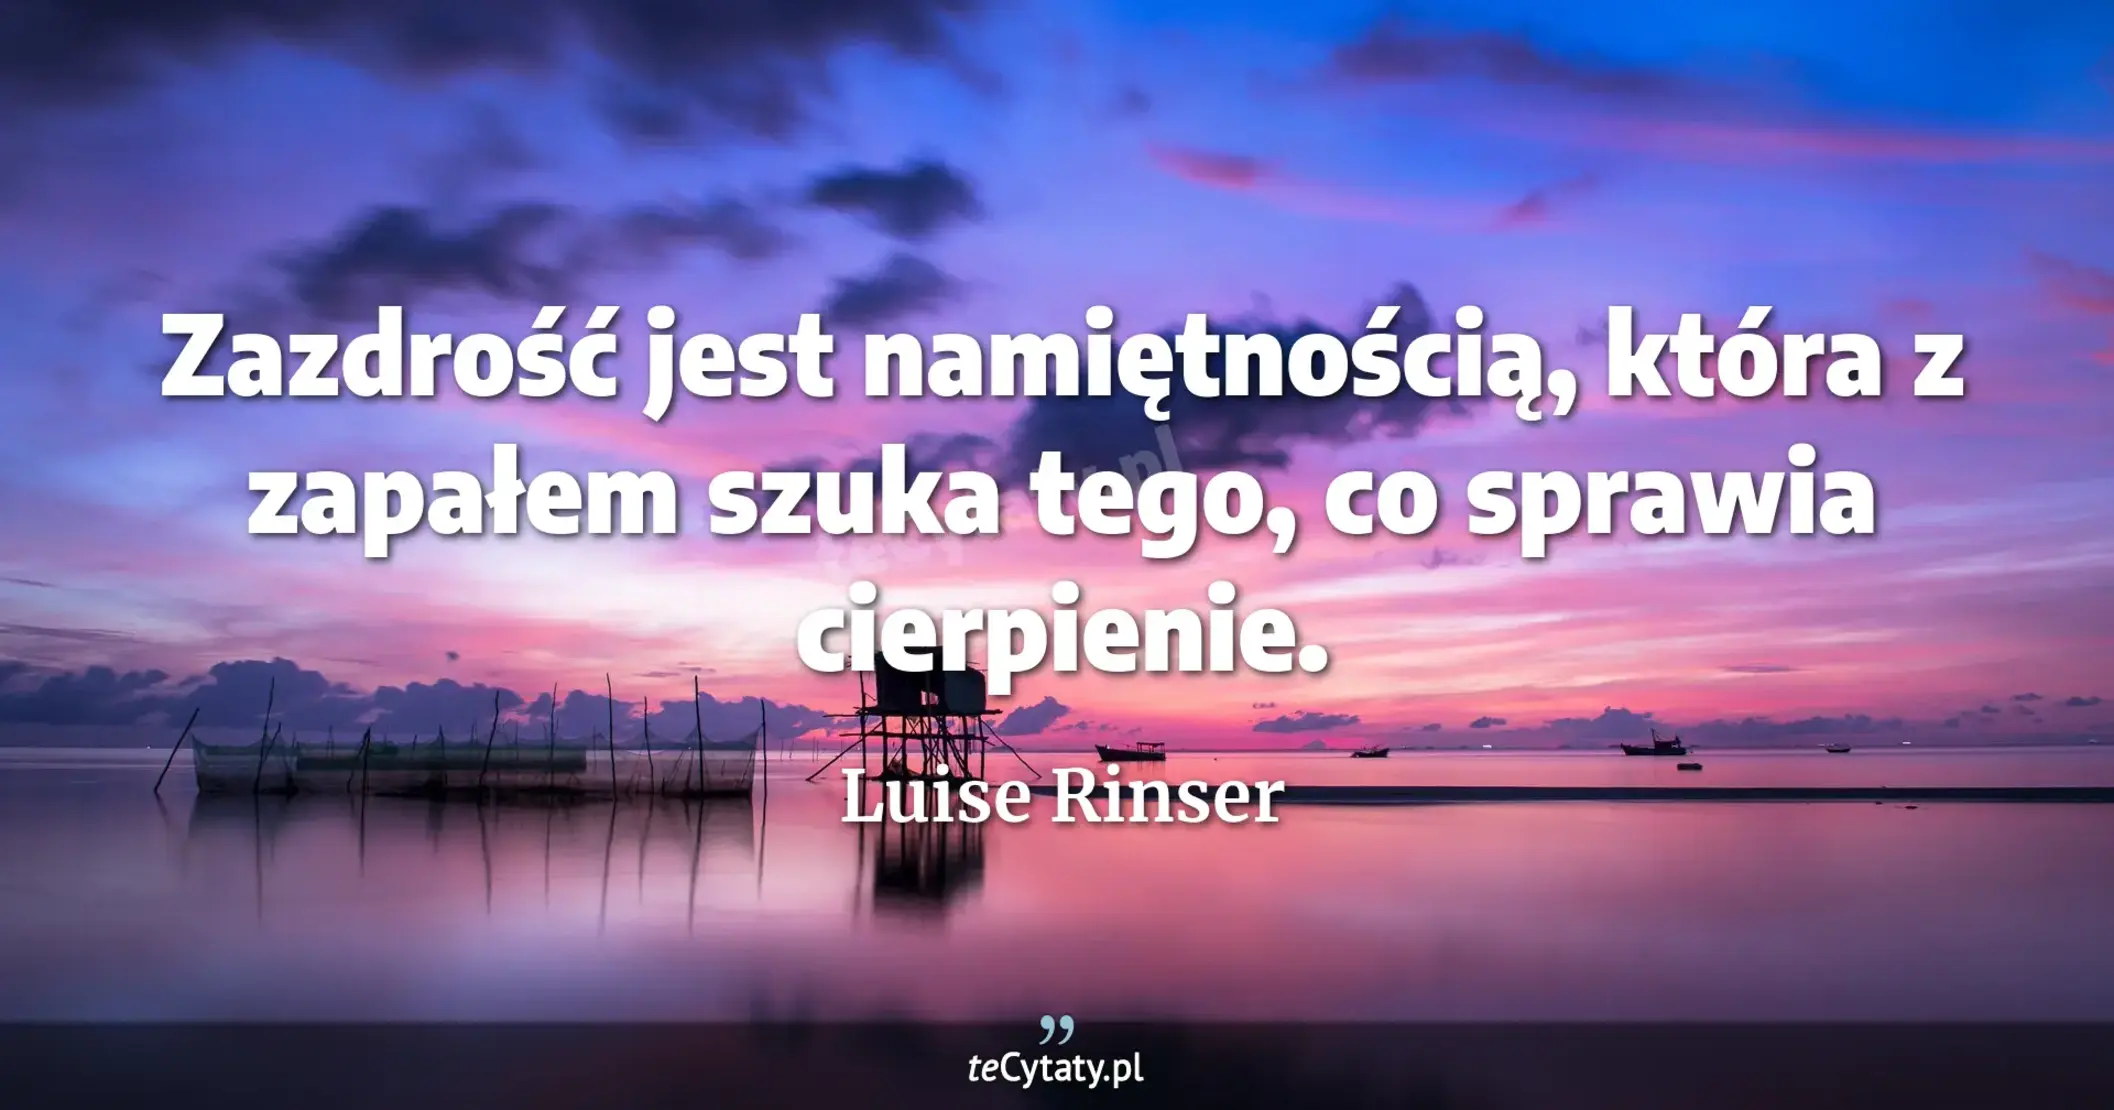 Zazdrość jest namiętnością, która z zapałem szuka tego, co sprawia cierpienie. - Luise Rinser